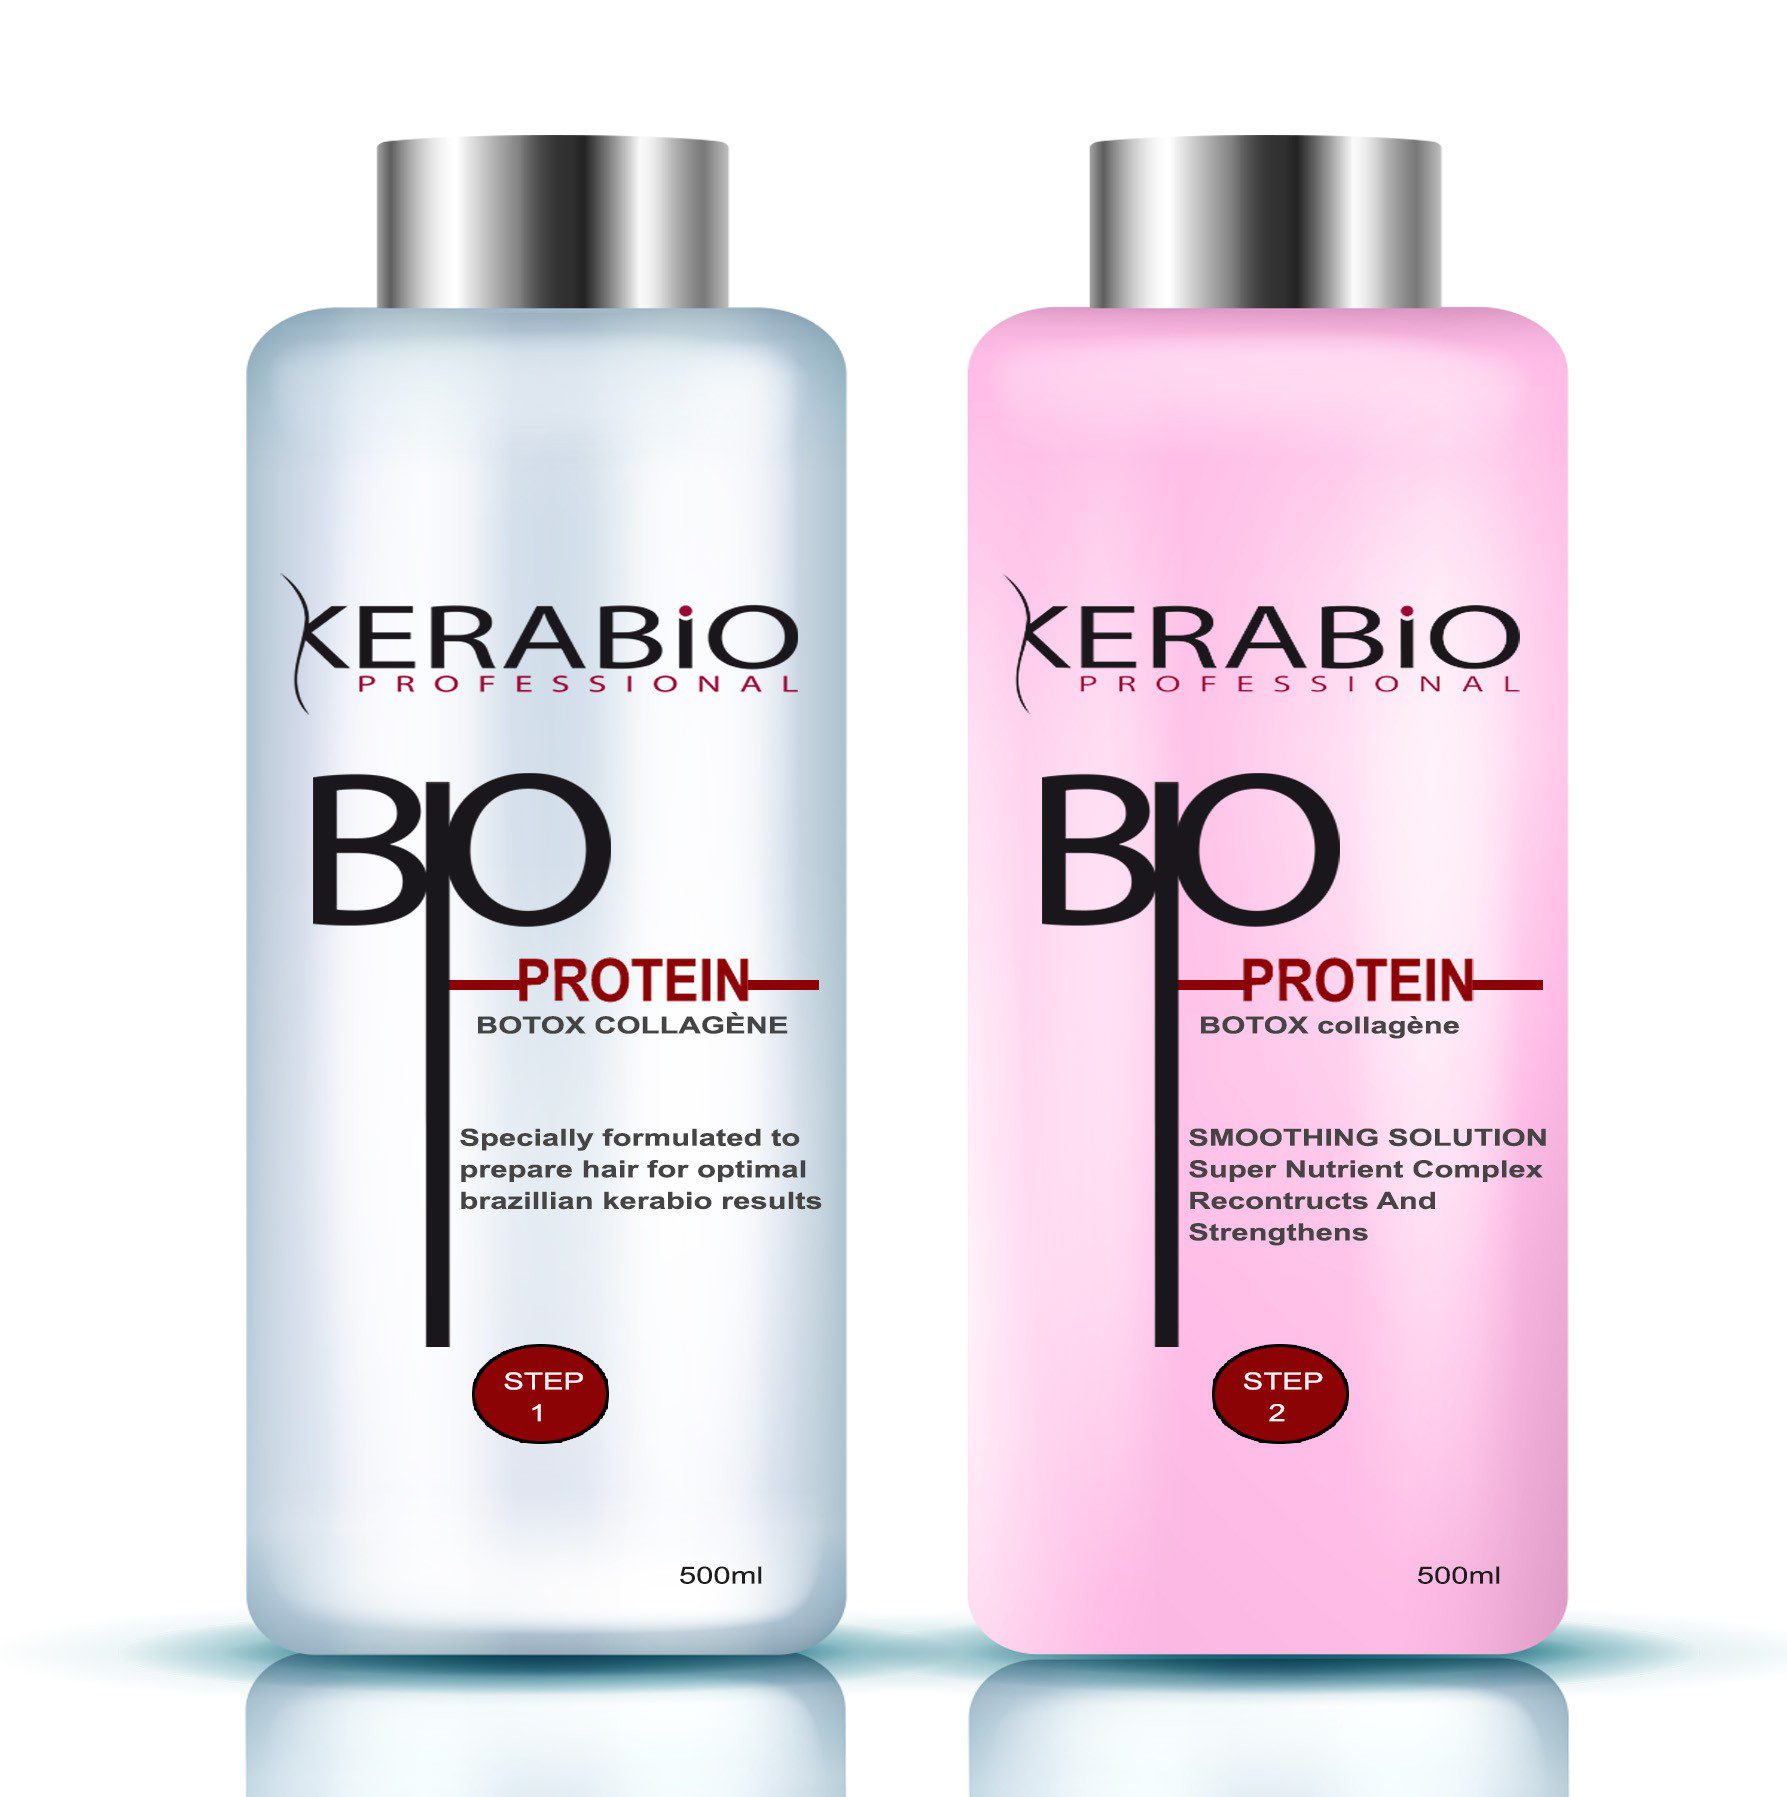 KERABIO Traitement Botox Lissage brésilien à la proteine - 2 x 500ml